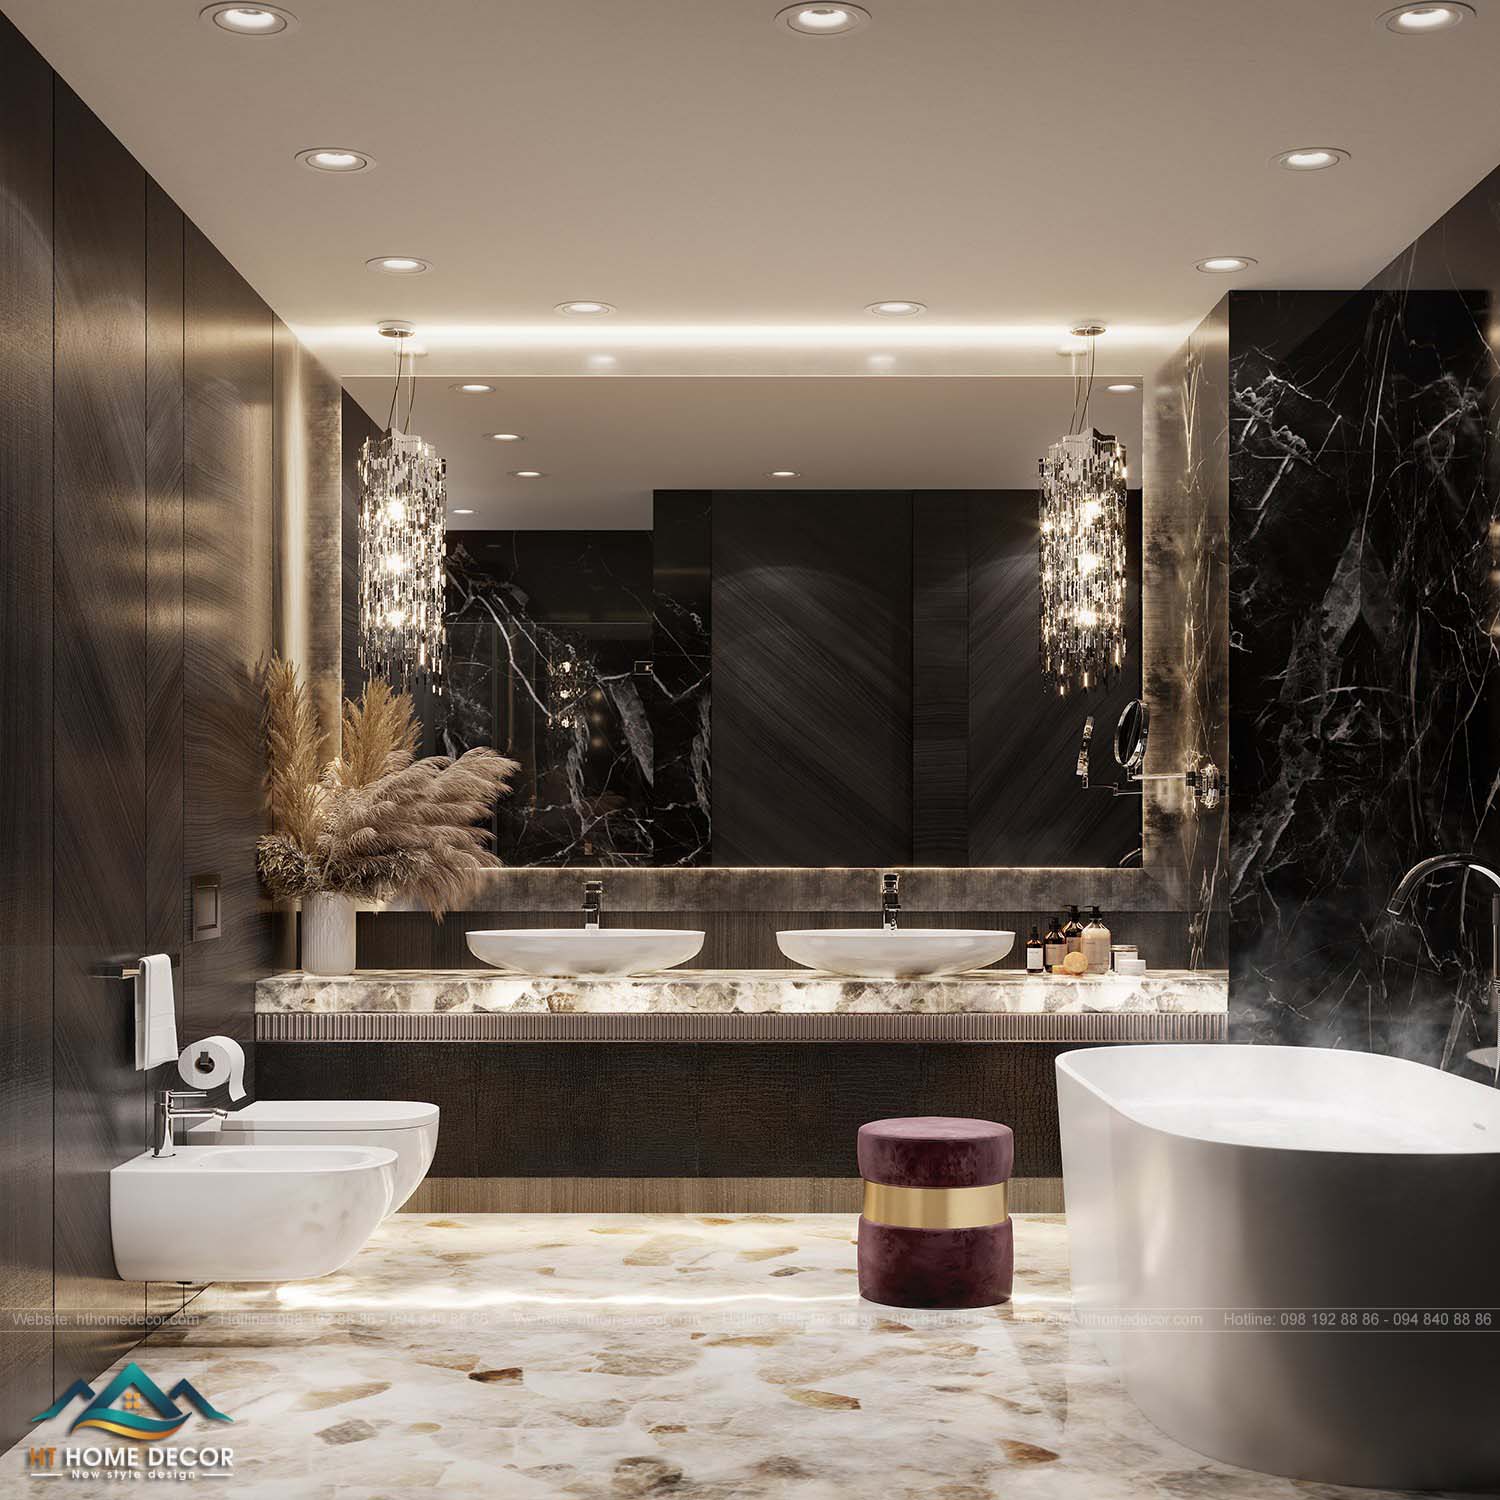 Phòng tắm là sự kết hợp giữa màu trắng và đen vân đá. Nét sang trọng cao cấp được thể hiện ngay trong cách bày trí hệ thống đèn cũng như vật dụng.